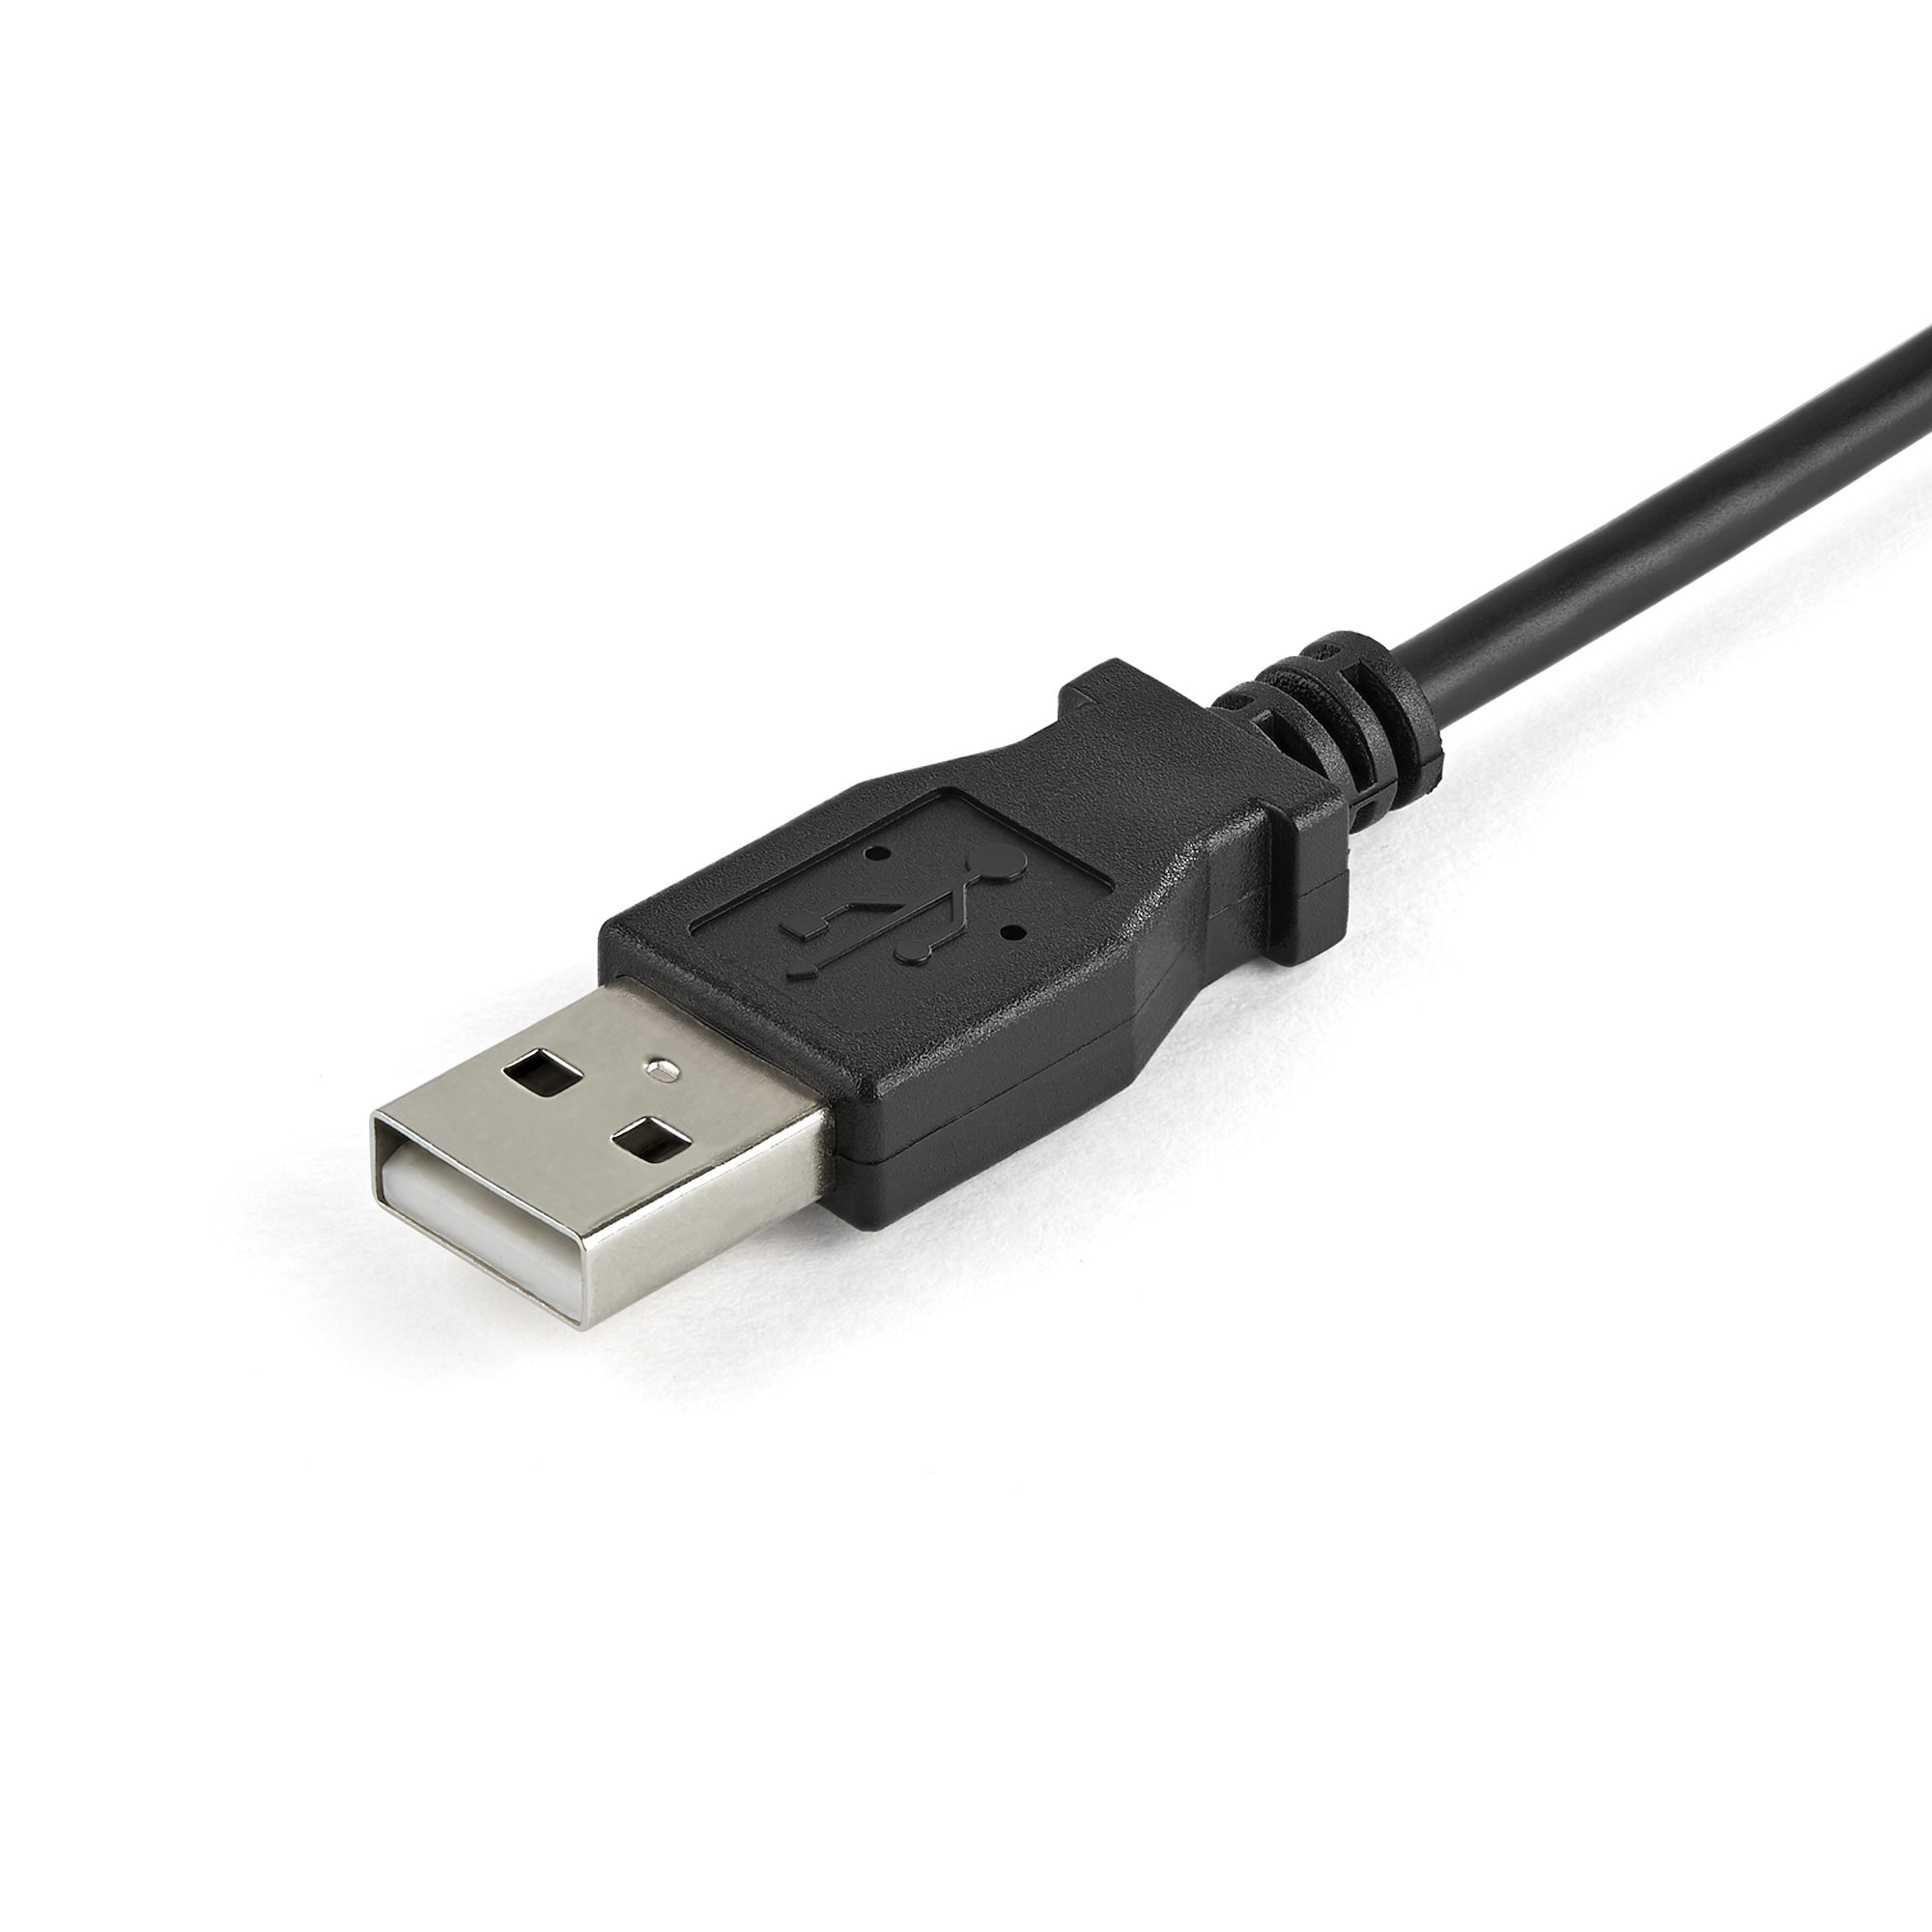 ノートパソコン対応USB 2.0接続KVMコンソール（保護筐体入り） KVMスイッチ 日本